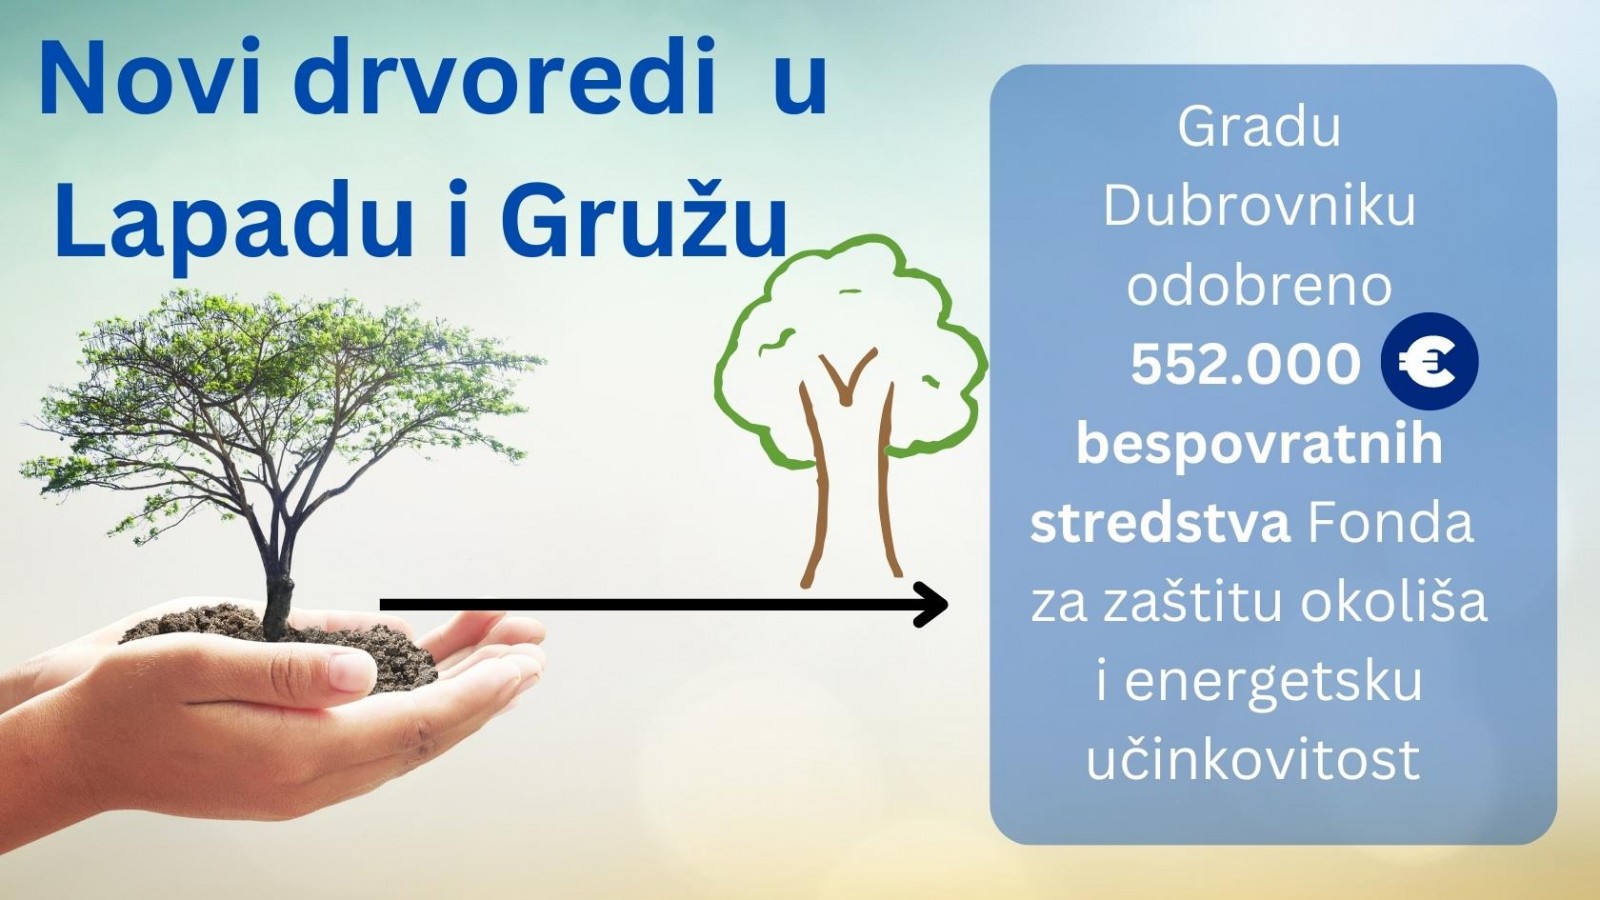 ZELENA INFRASTRUKTURA Gradu Dubrovniku 552.000 eura bespovratnih sredstava za nove drvorede u Lapadu i Gružu